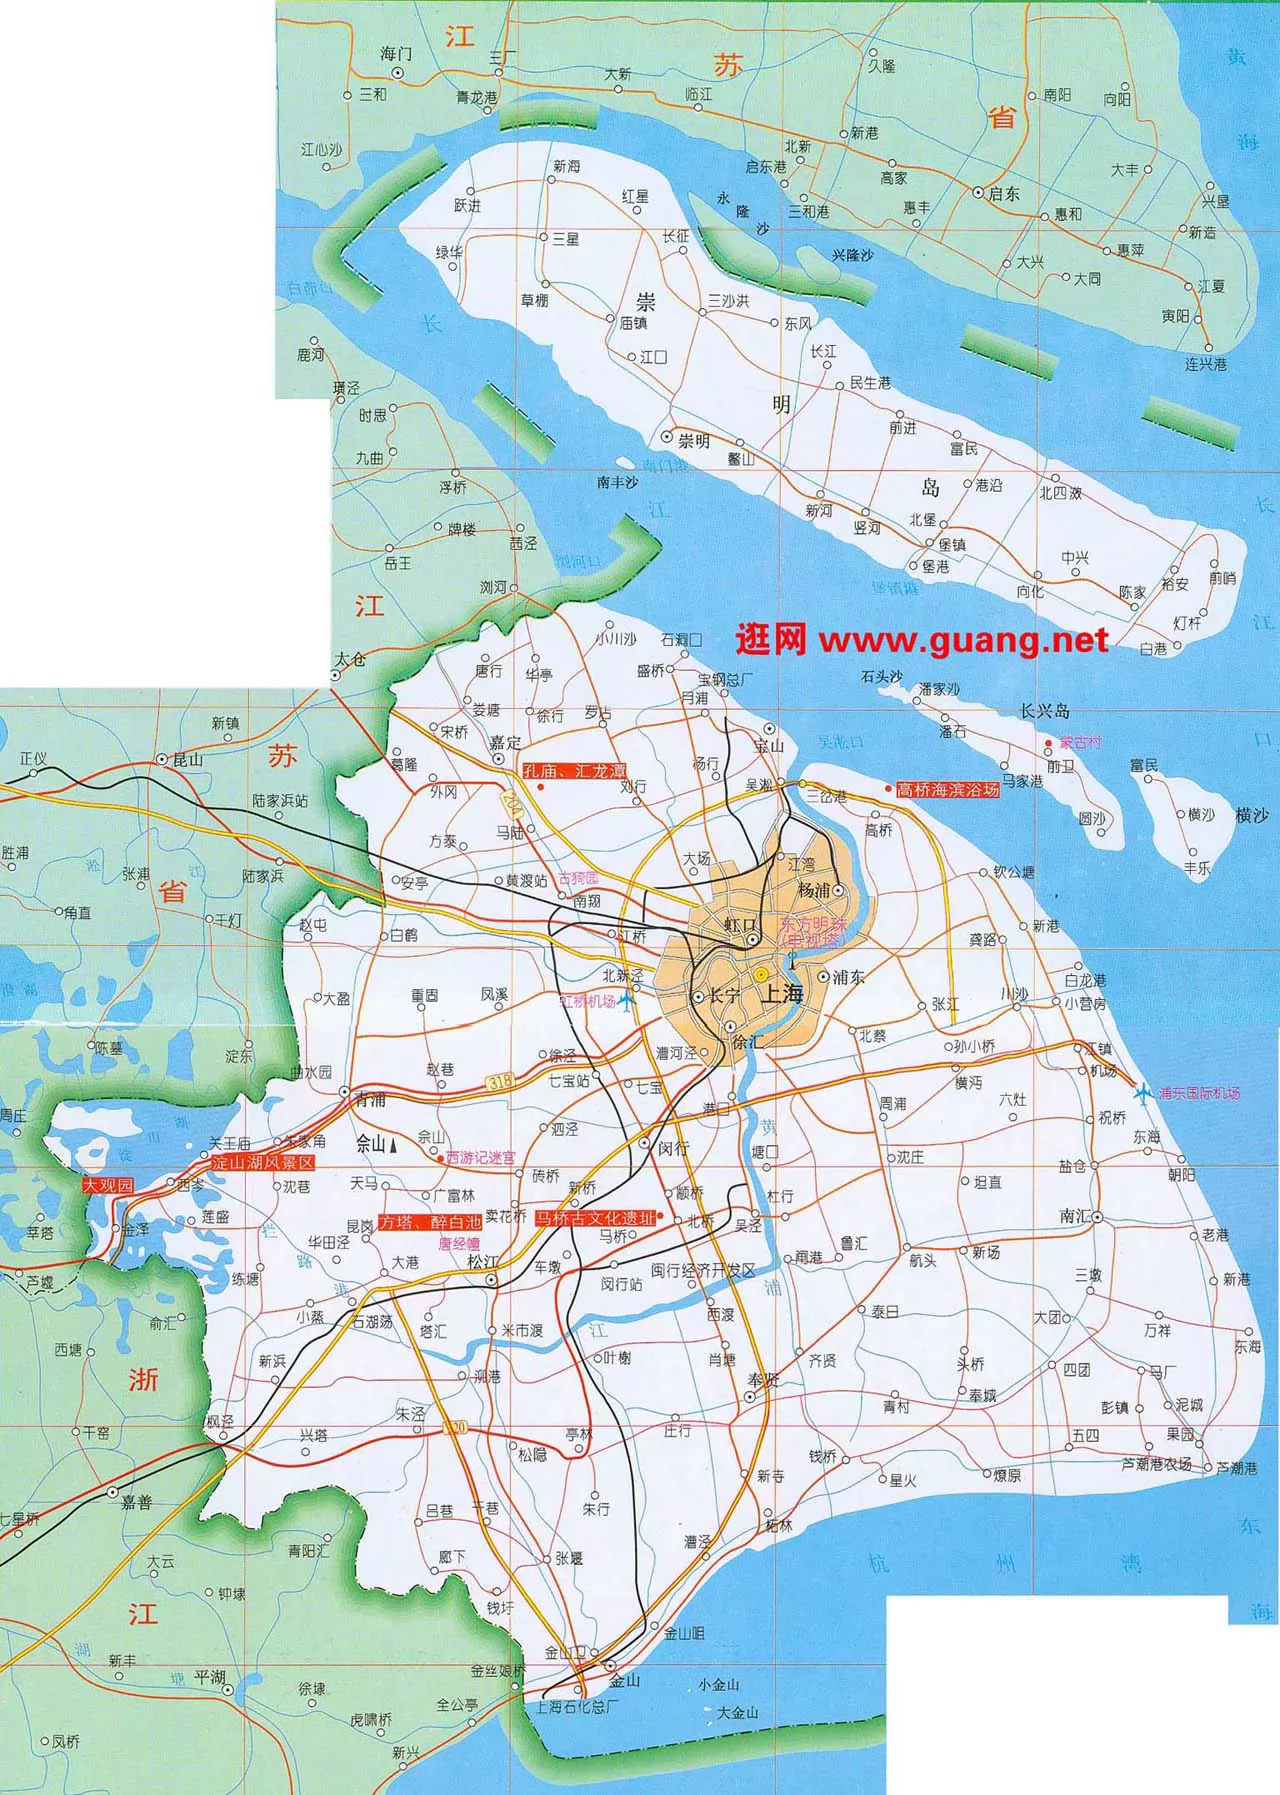 上海地图,上海地图查询,上海地图全图